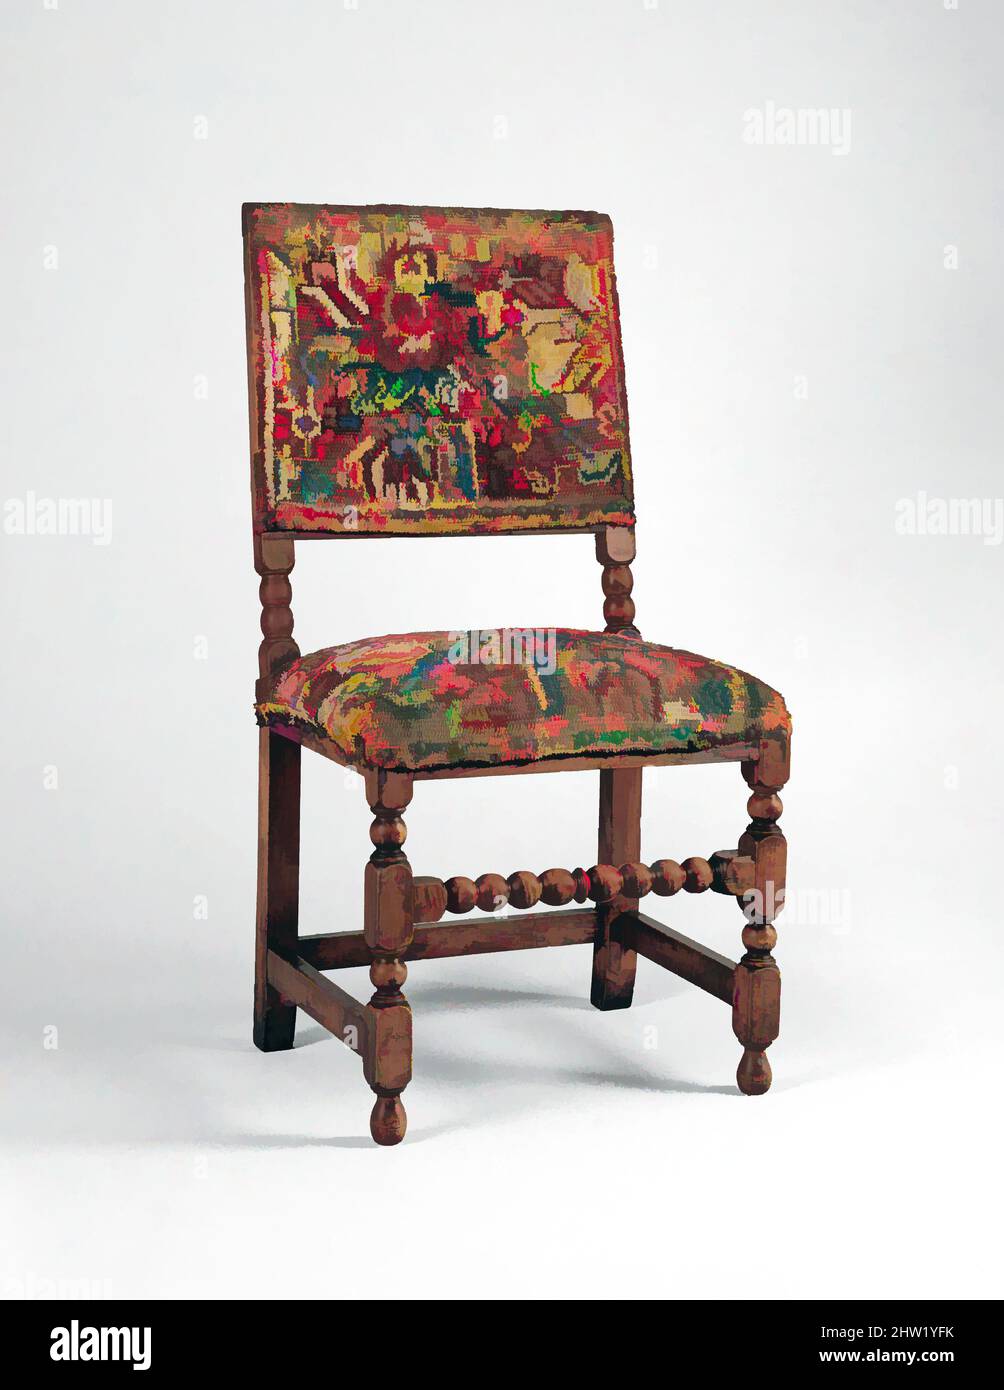 Art inspiré par la chaise de travail de Turquie, 1680–1700, probablement fabriqué à Boston, Massachusetts, États-Unis, américain, Maple, chêne, 40 3/4 x 21 x 17 po (103,5 x 53,3 x 43,2 cm), mobilier, la grande rareté de cette chaise repose dans la dinde de laine originale qui couvre son siège et son dos. «, les œuvres classiques modernisées par Artotop avec un peu de modernité. Formes, couleur et valeur, impact visuel accrocheur sur l'art émotions par la liberté d'œuvres d'art d'une manière contemporaine. Un message intemporel qui cherche une nouvelle direction créative. Artistes qui se tournent vers le support numérique et créent le NFT Artotop Banque D'Images